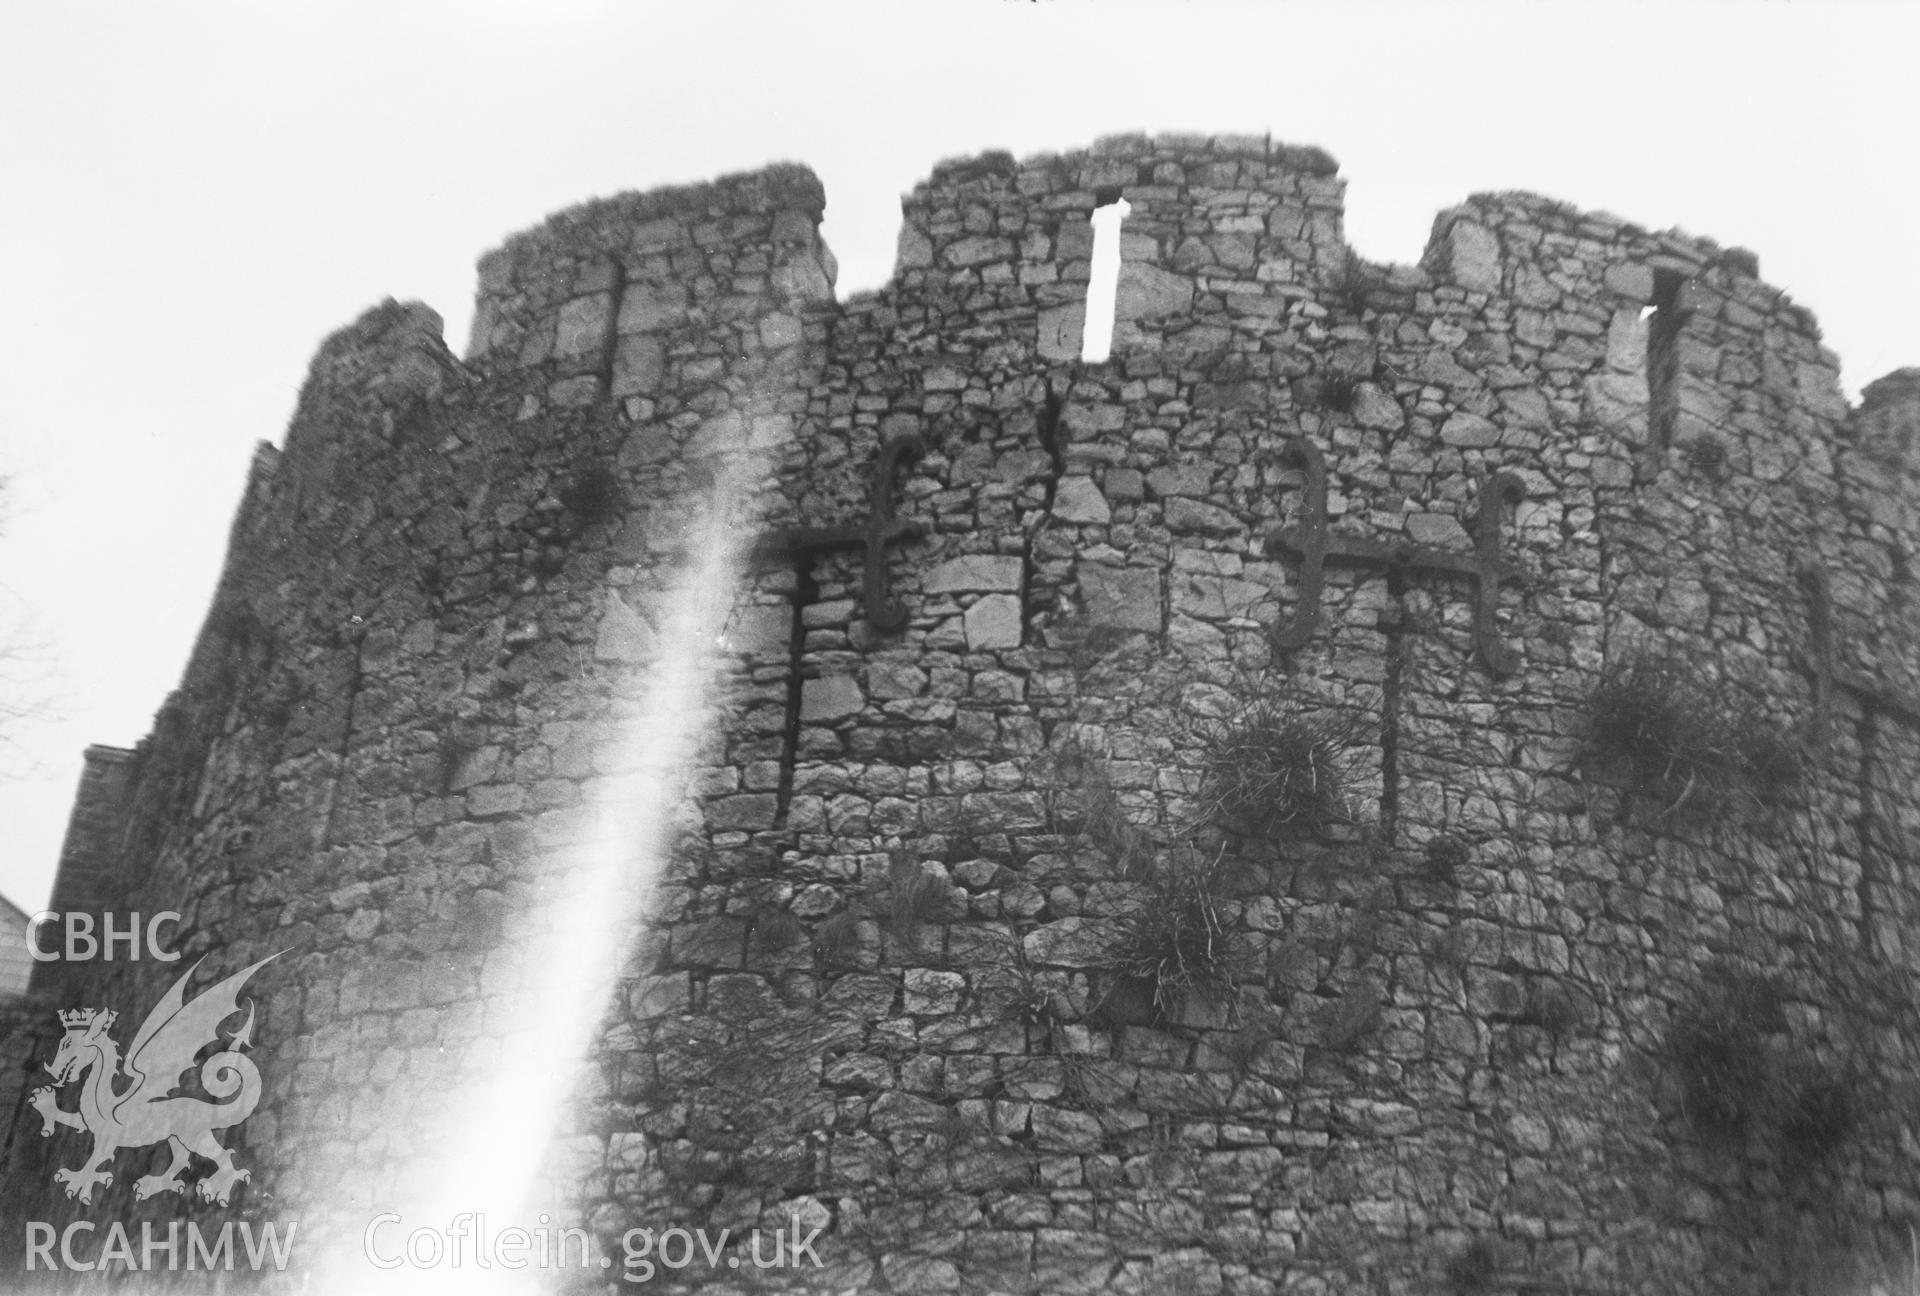 Digital copy of a nitrate negative showing view of Swansea Castle taken by Leonard Monroe, April 1930.